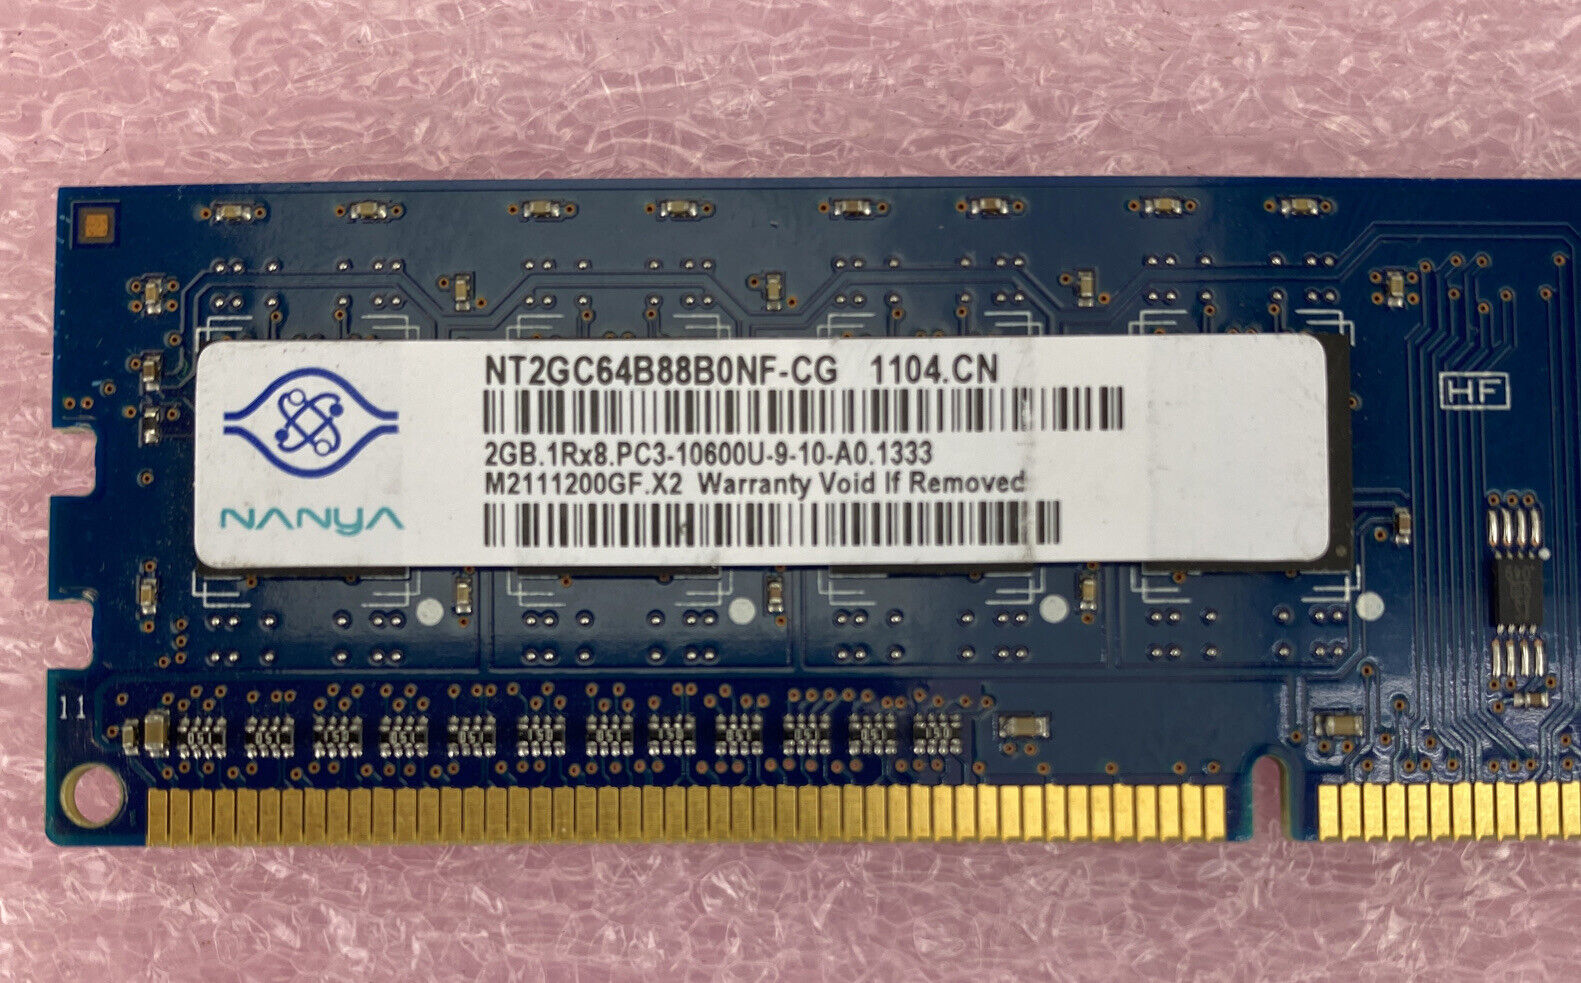 2GB Nanya NT2GC64B88B0NF-CG PC3-10600 1333 MHz 1Rx8 DIMM DDR3 RAM